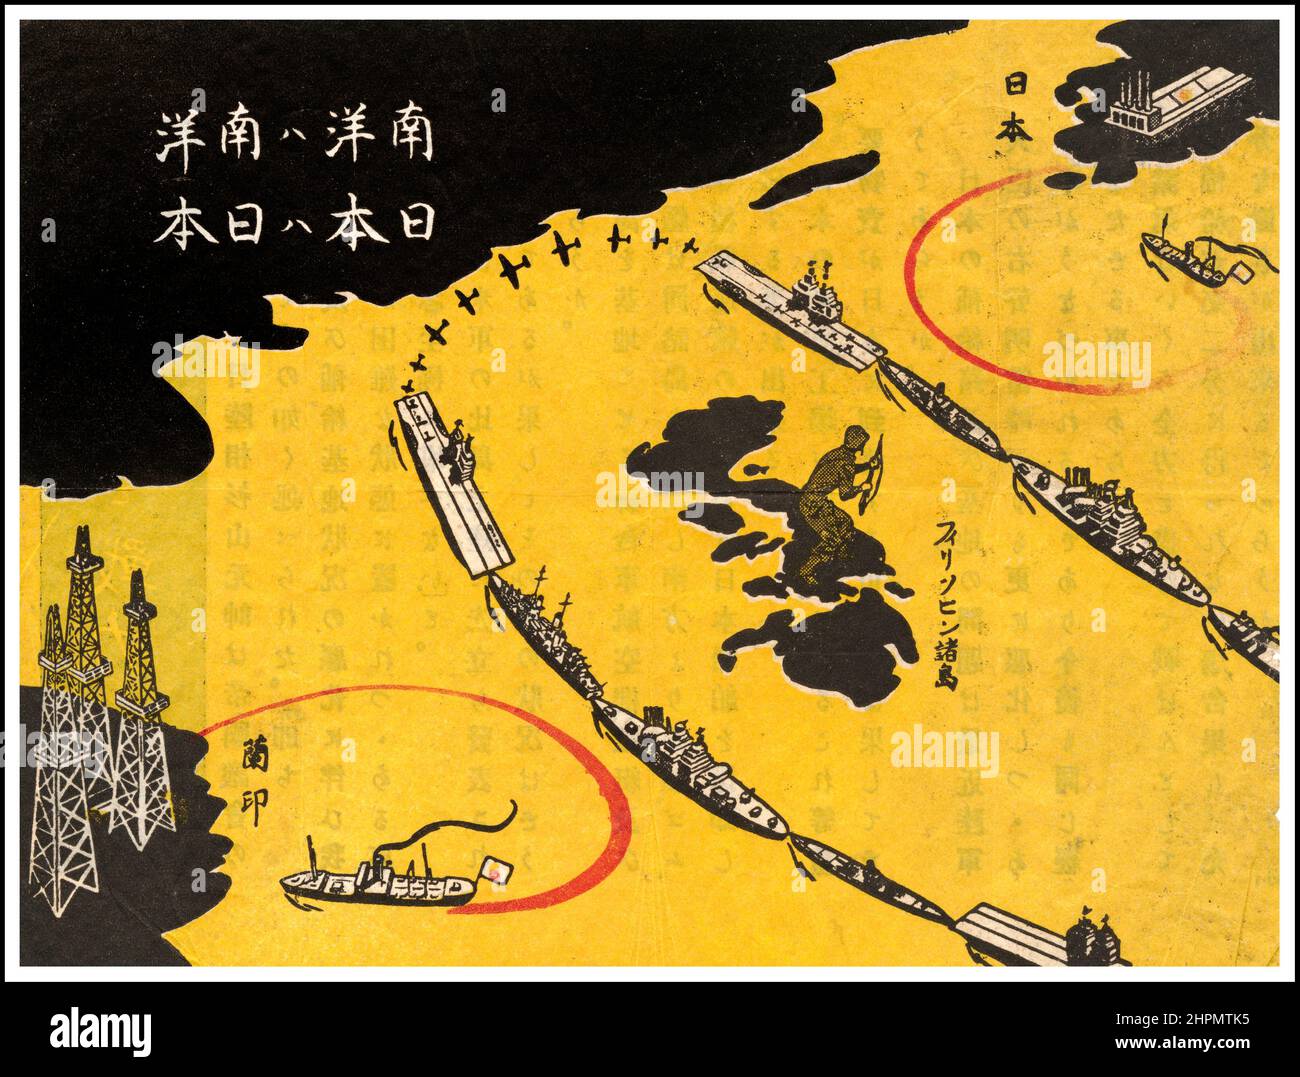 Die USA-Propagandabroschüre aus dem Jahr WW2 wurde über Japan fallen gelassen. Karte, die von den alliierten Streitkräften für die Verteilung an japanische Soldaten erstellt wurde. Der Titel der Karte „der Südpazifik ist der Südpazifik. Japan Ist Japan.“ Das Gebiet unten links ist „Niederländische Ostindien“, und das Land oben rechts ist „Japan“. Dazwischen liegen die Philippinen (wo die Amerikaner gelandet waren) und ein solider Ring von alliierten Flugzeugträgern, U-Booten und anderen Schiffen, die Öl und andere lebenswichtige Vorräte davon abhalten, die japanische Munitionsindustrie zu erreichen. Stockfoto